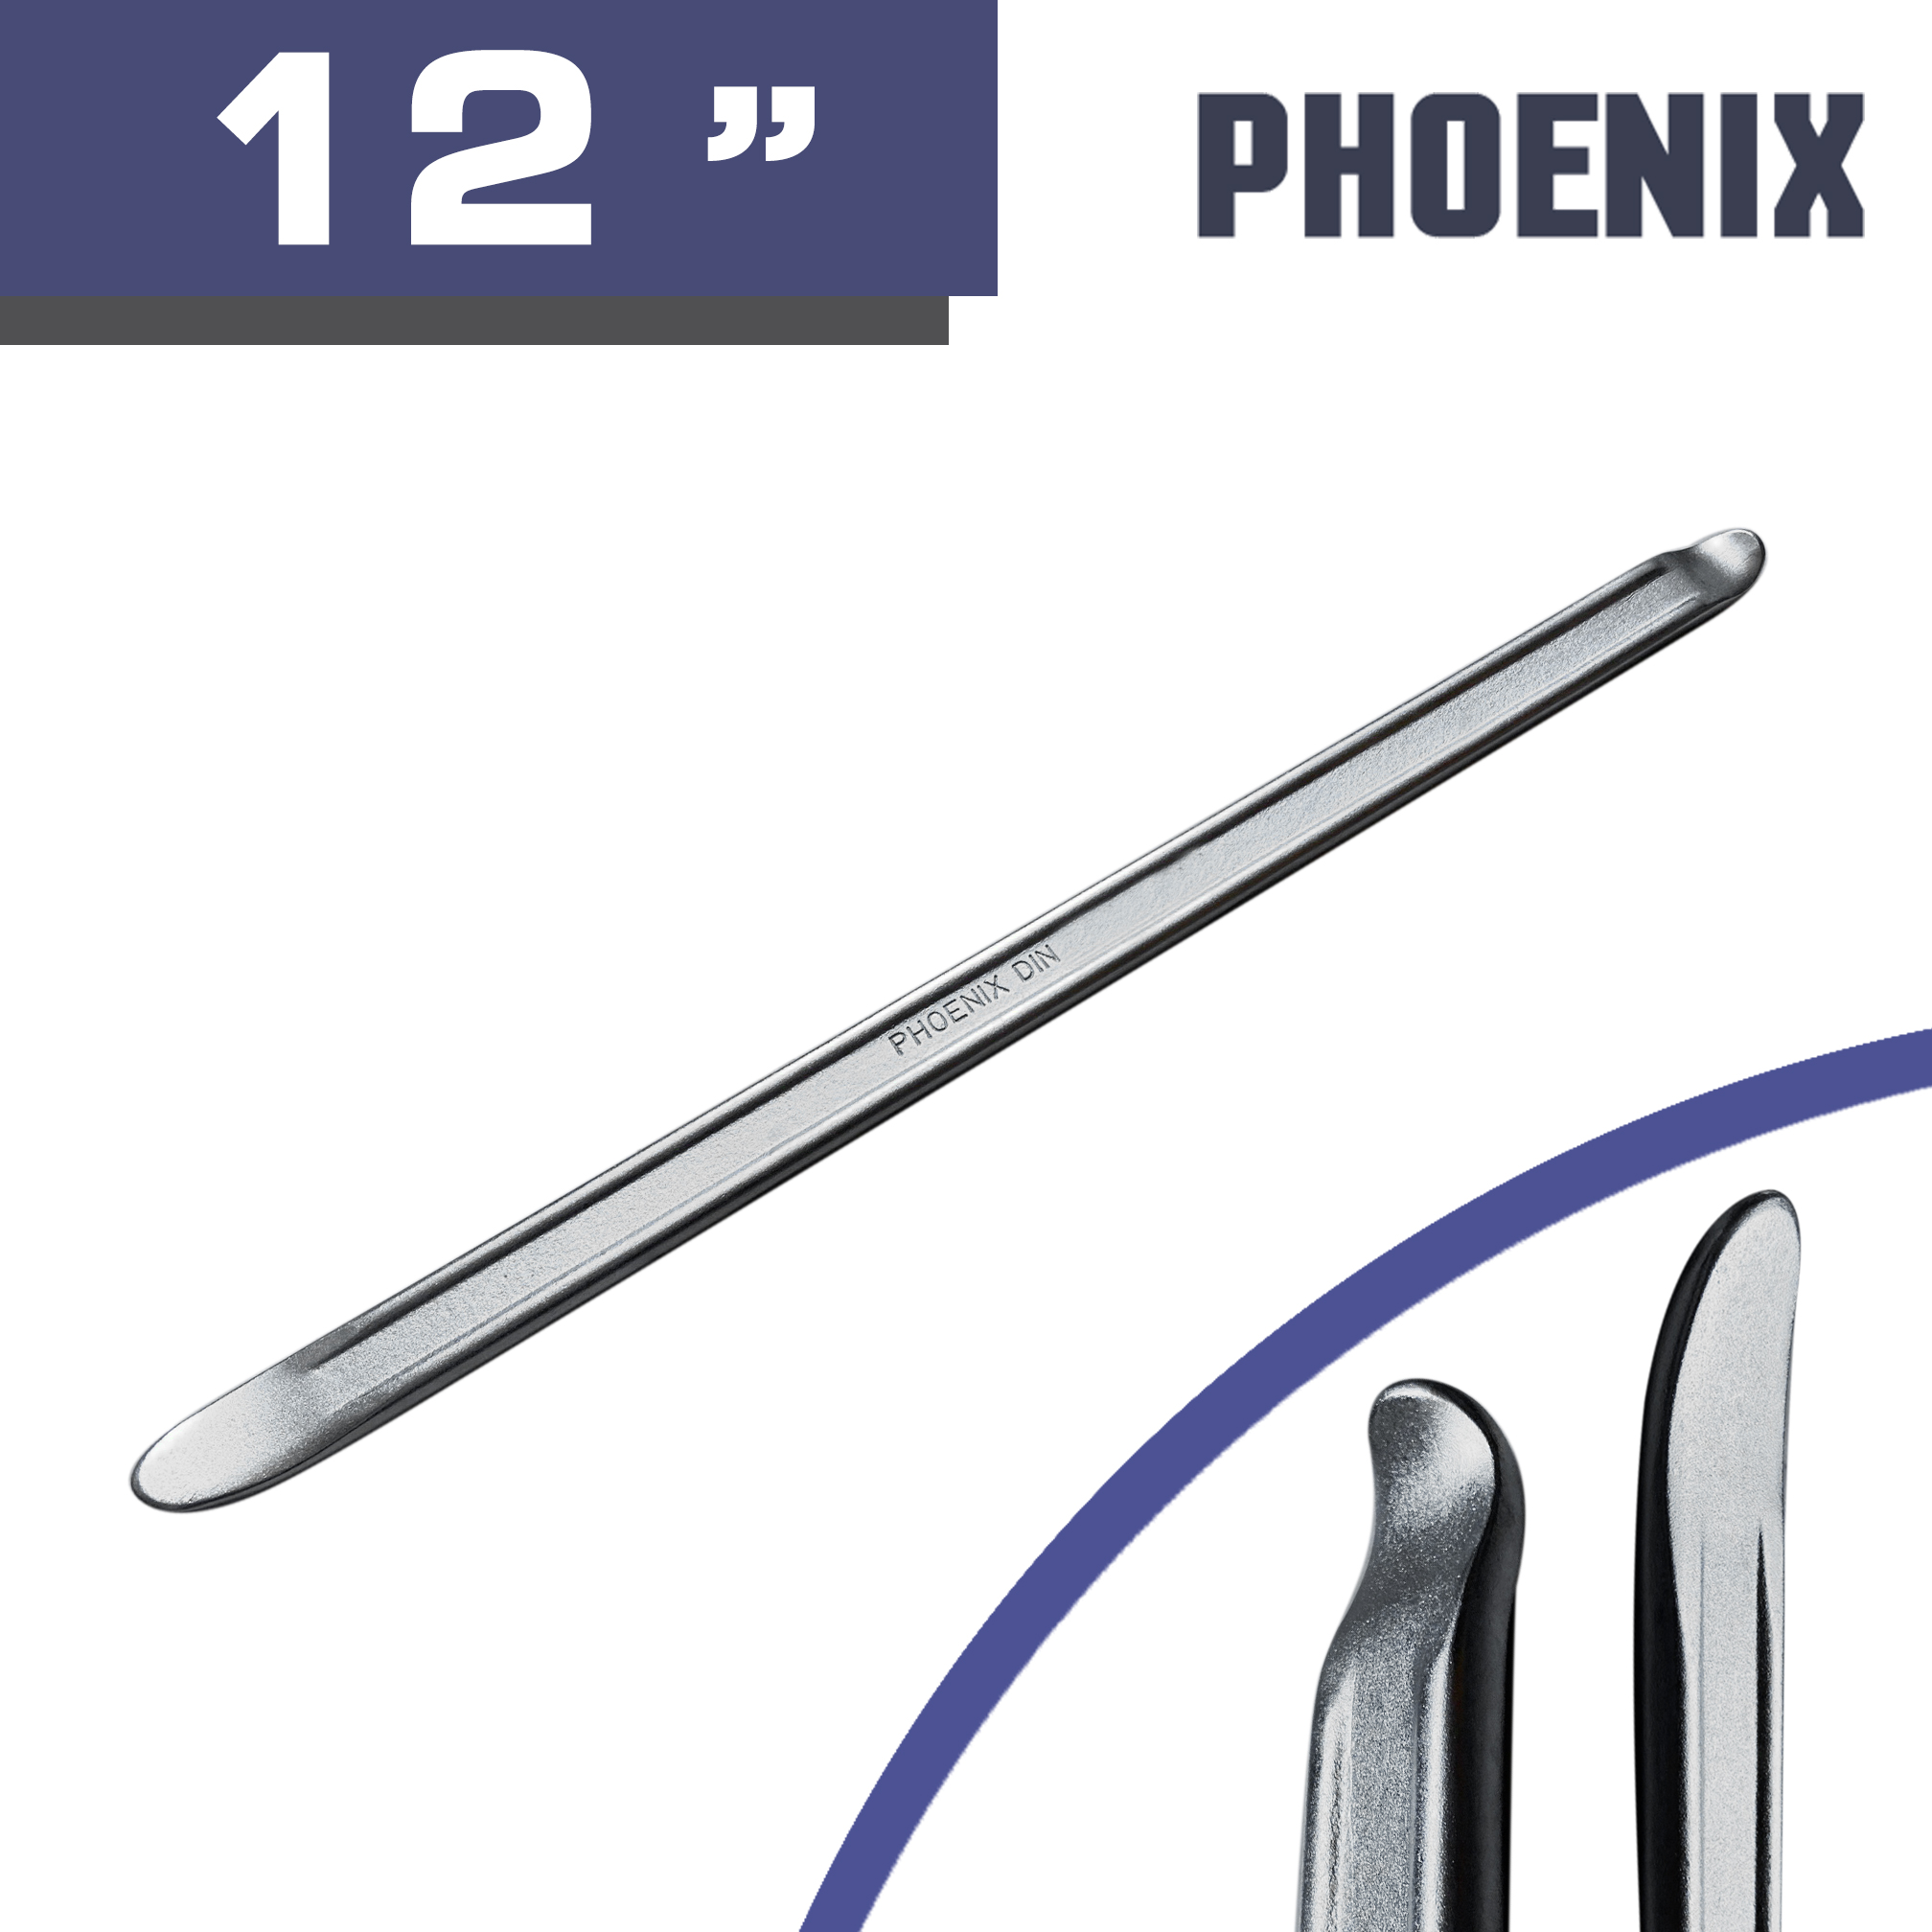 Phoenix เหล็กงัดยาง อย่างดี เหล็ก Chrome vanadium (4 ขนาด เลือกได้ตอนสั่งซื้อ)